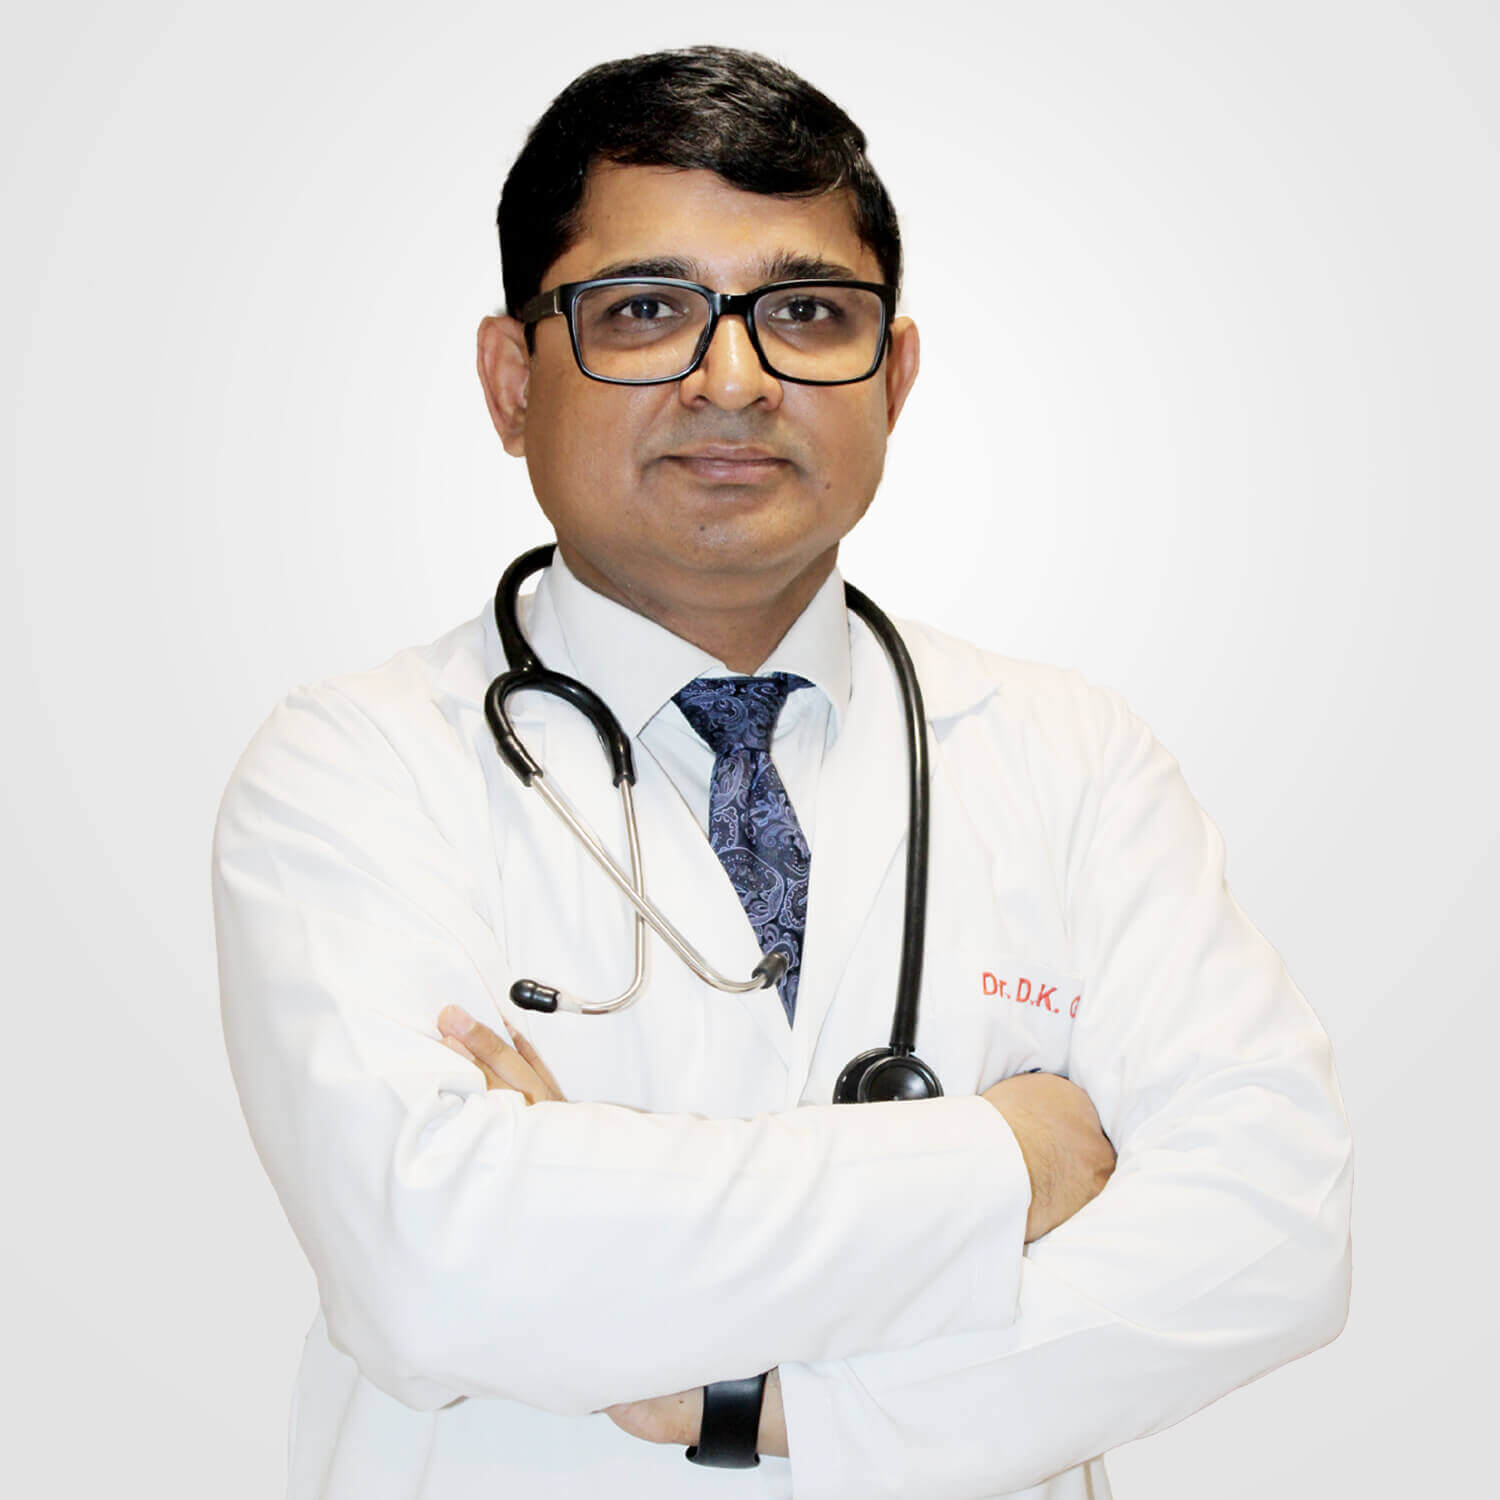 Dr. D K Gupta